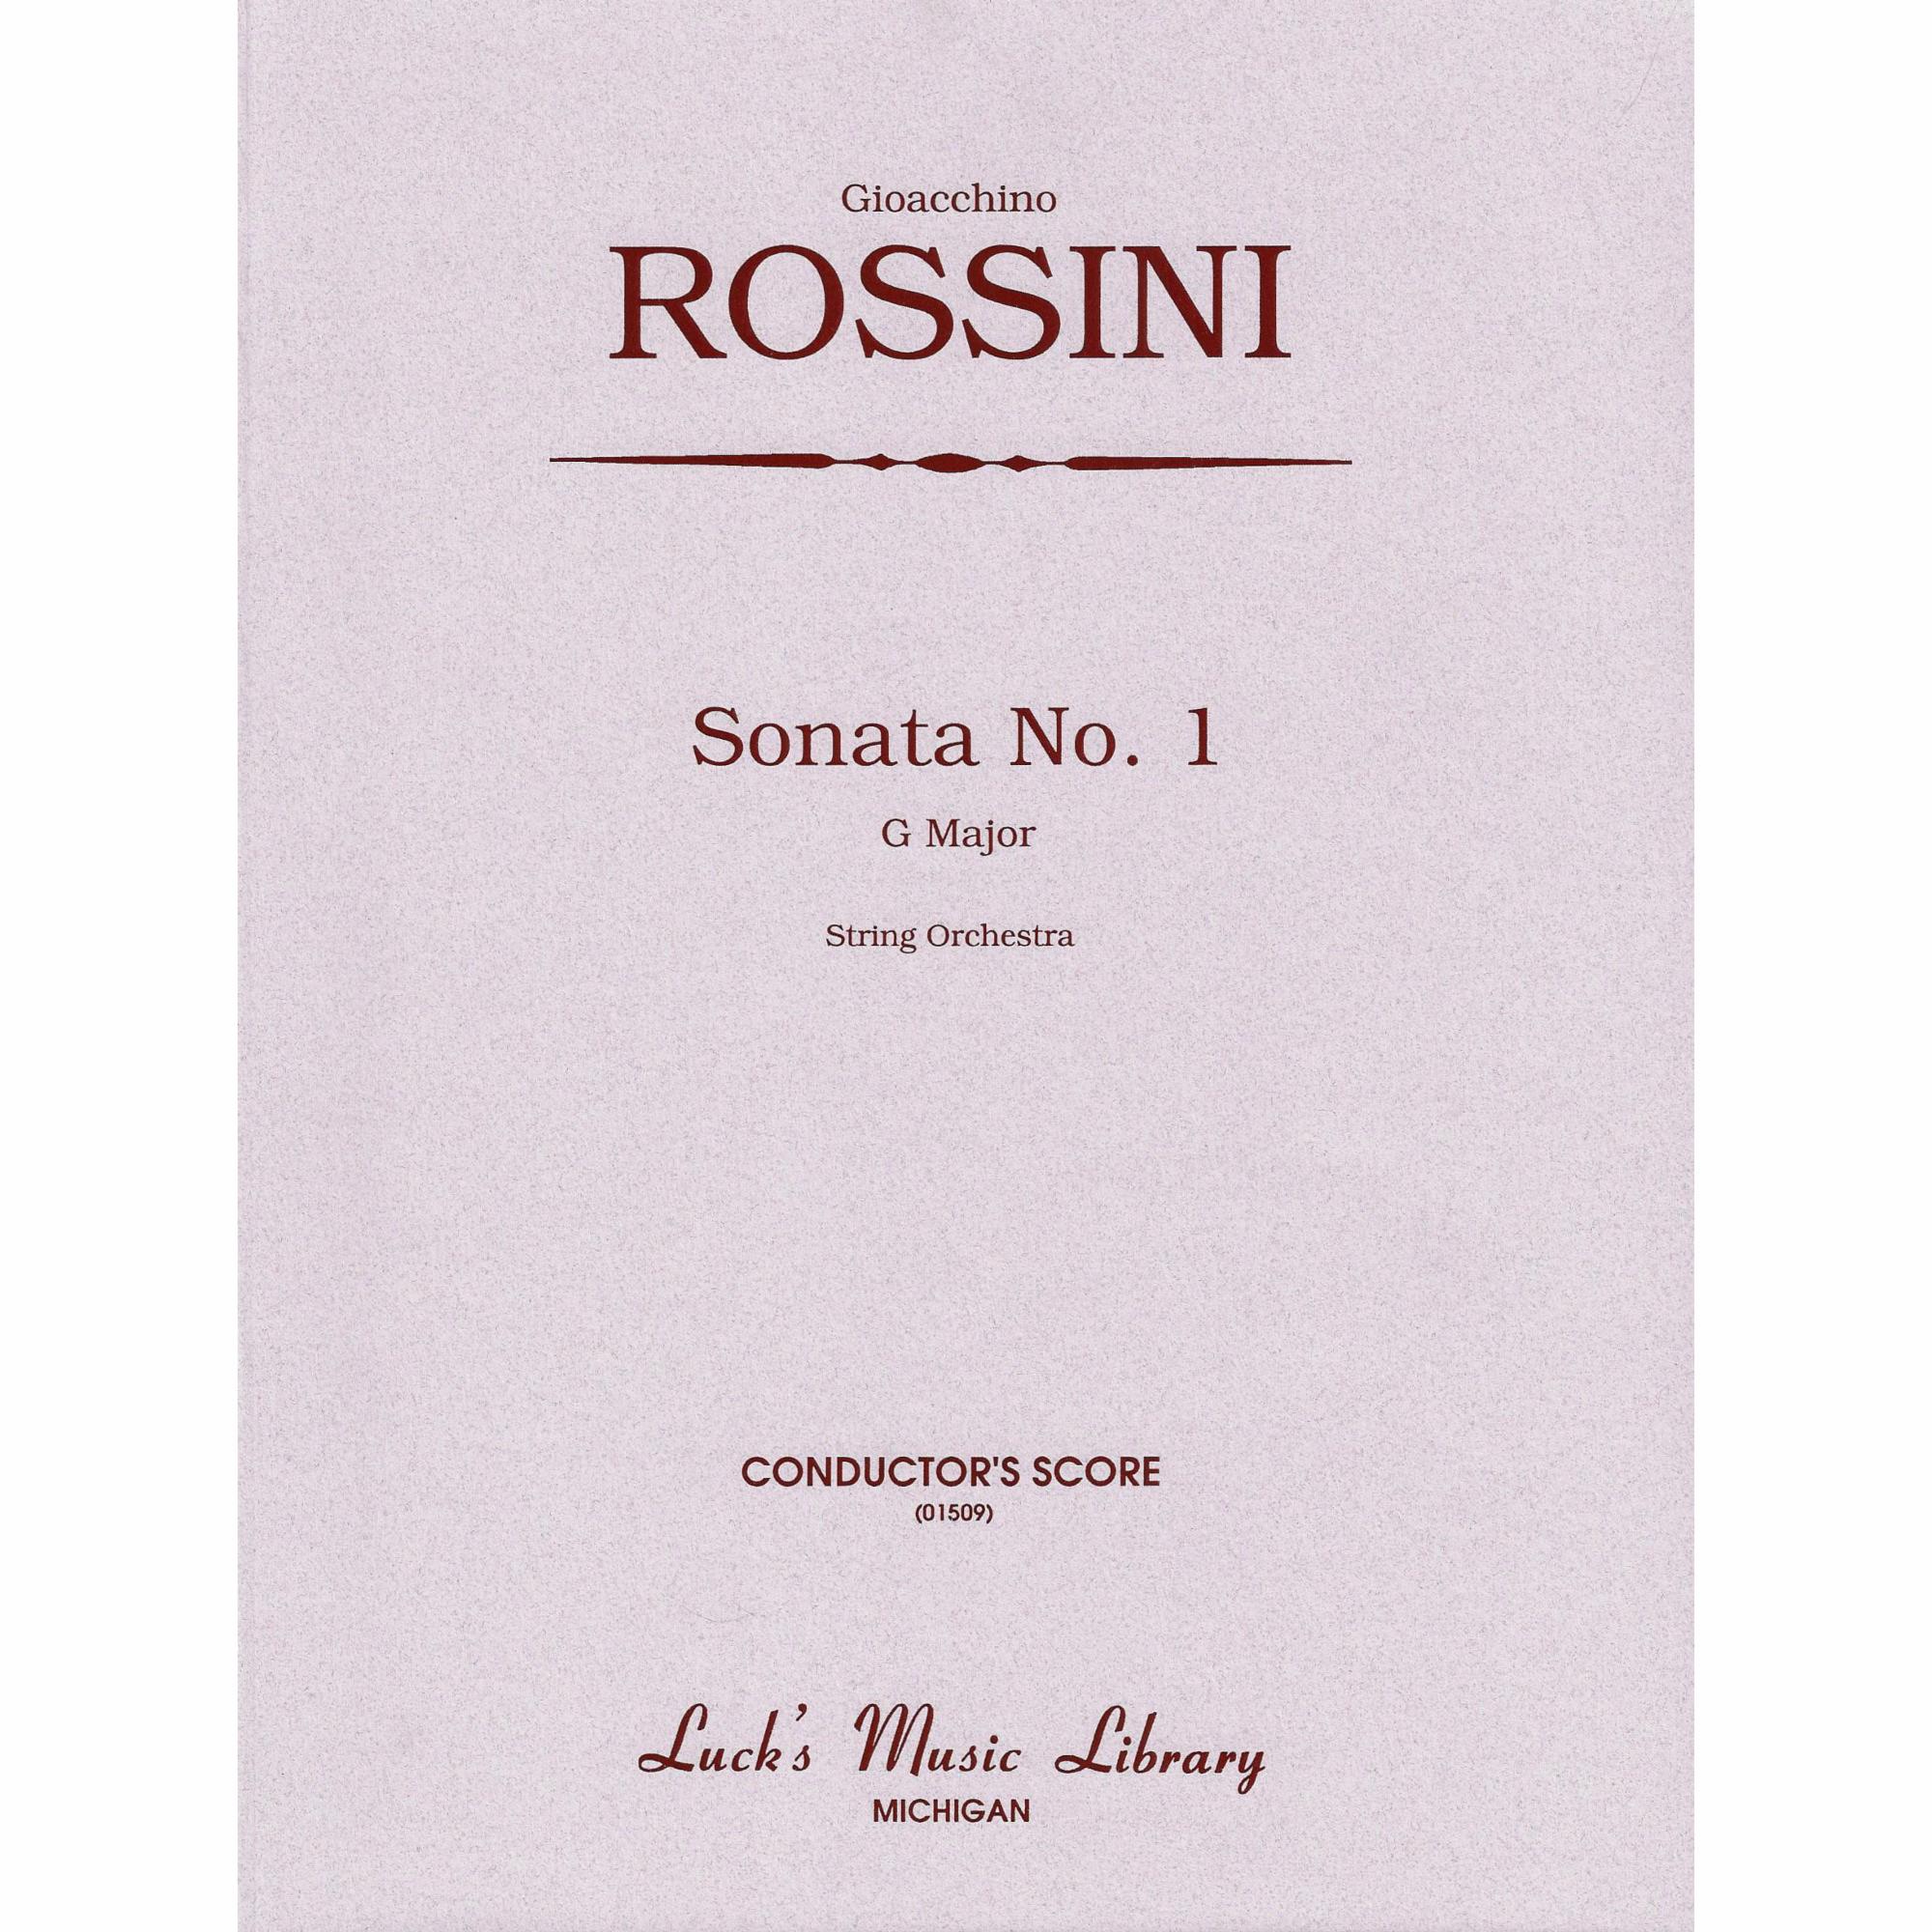 Rossini -- Sonata No. 1 in G Major for String Orchestra